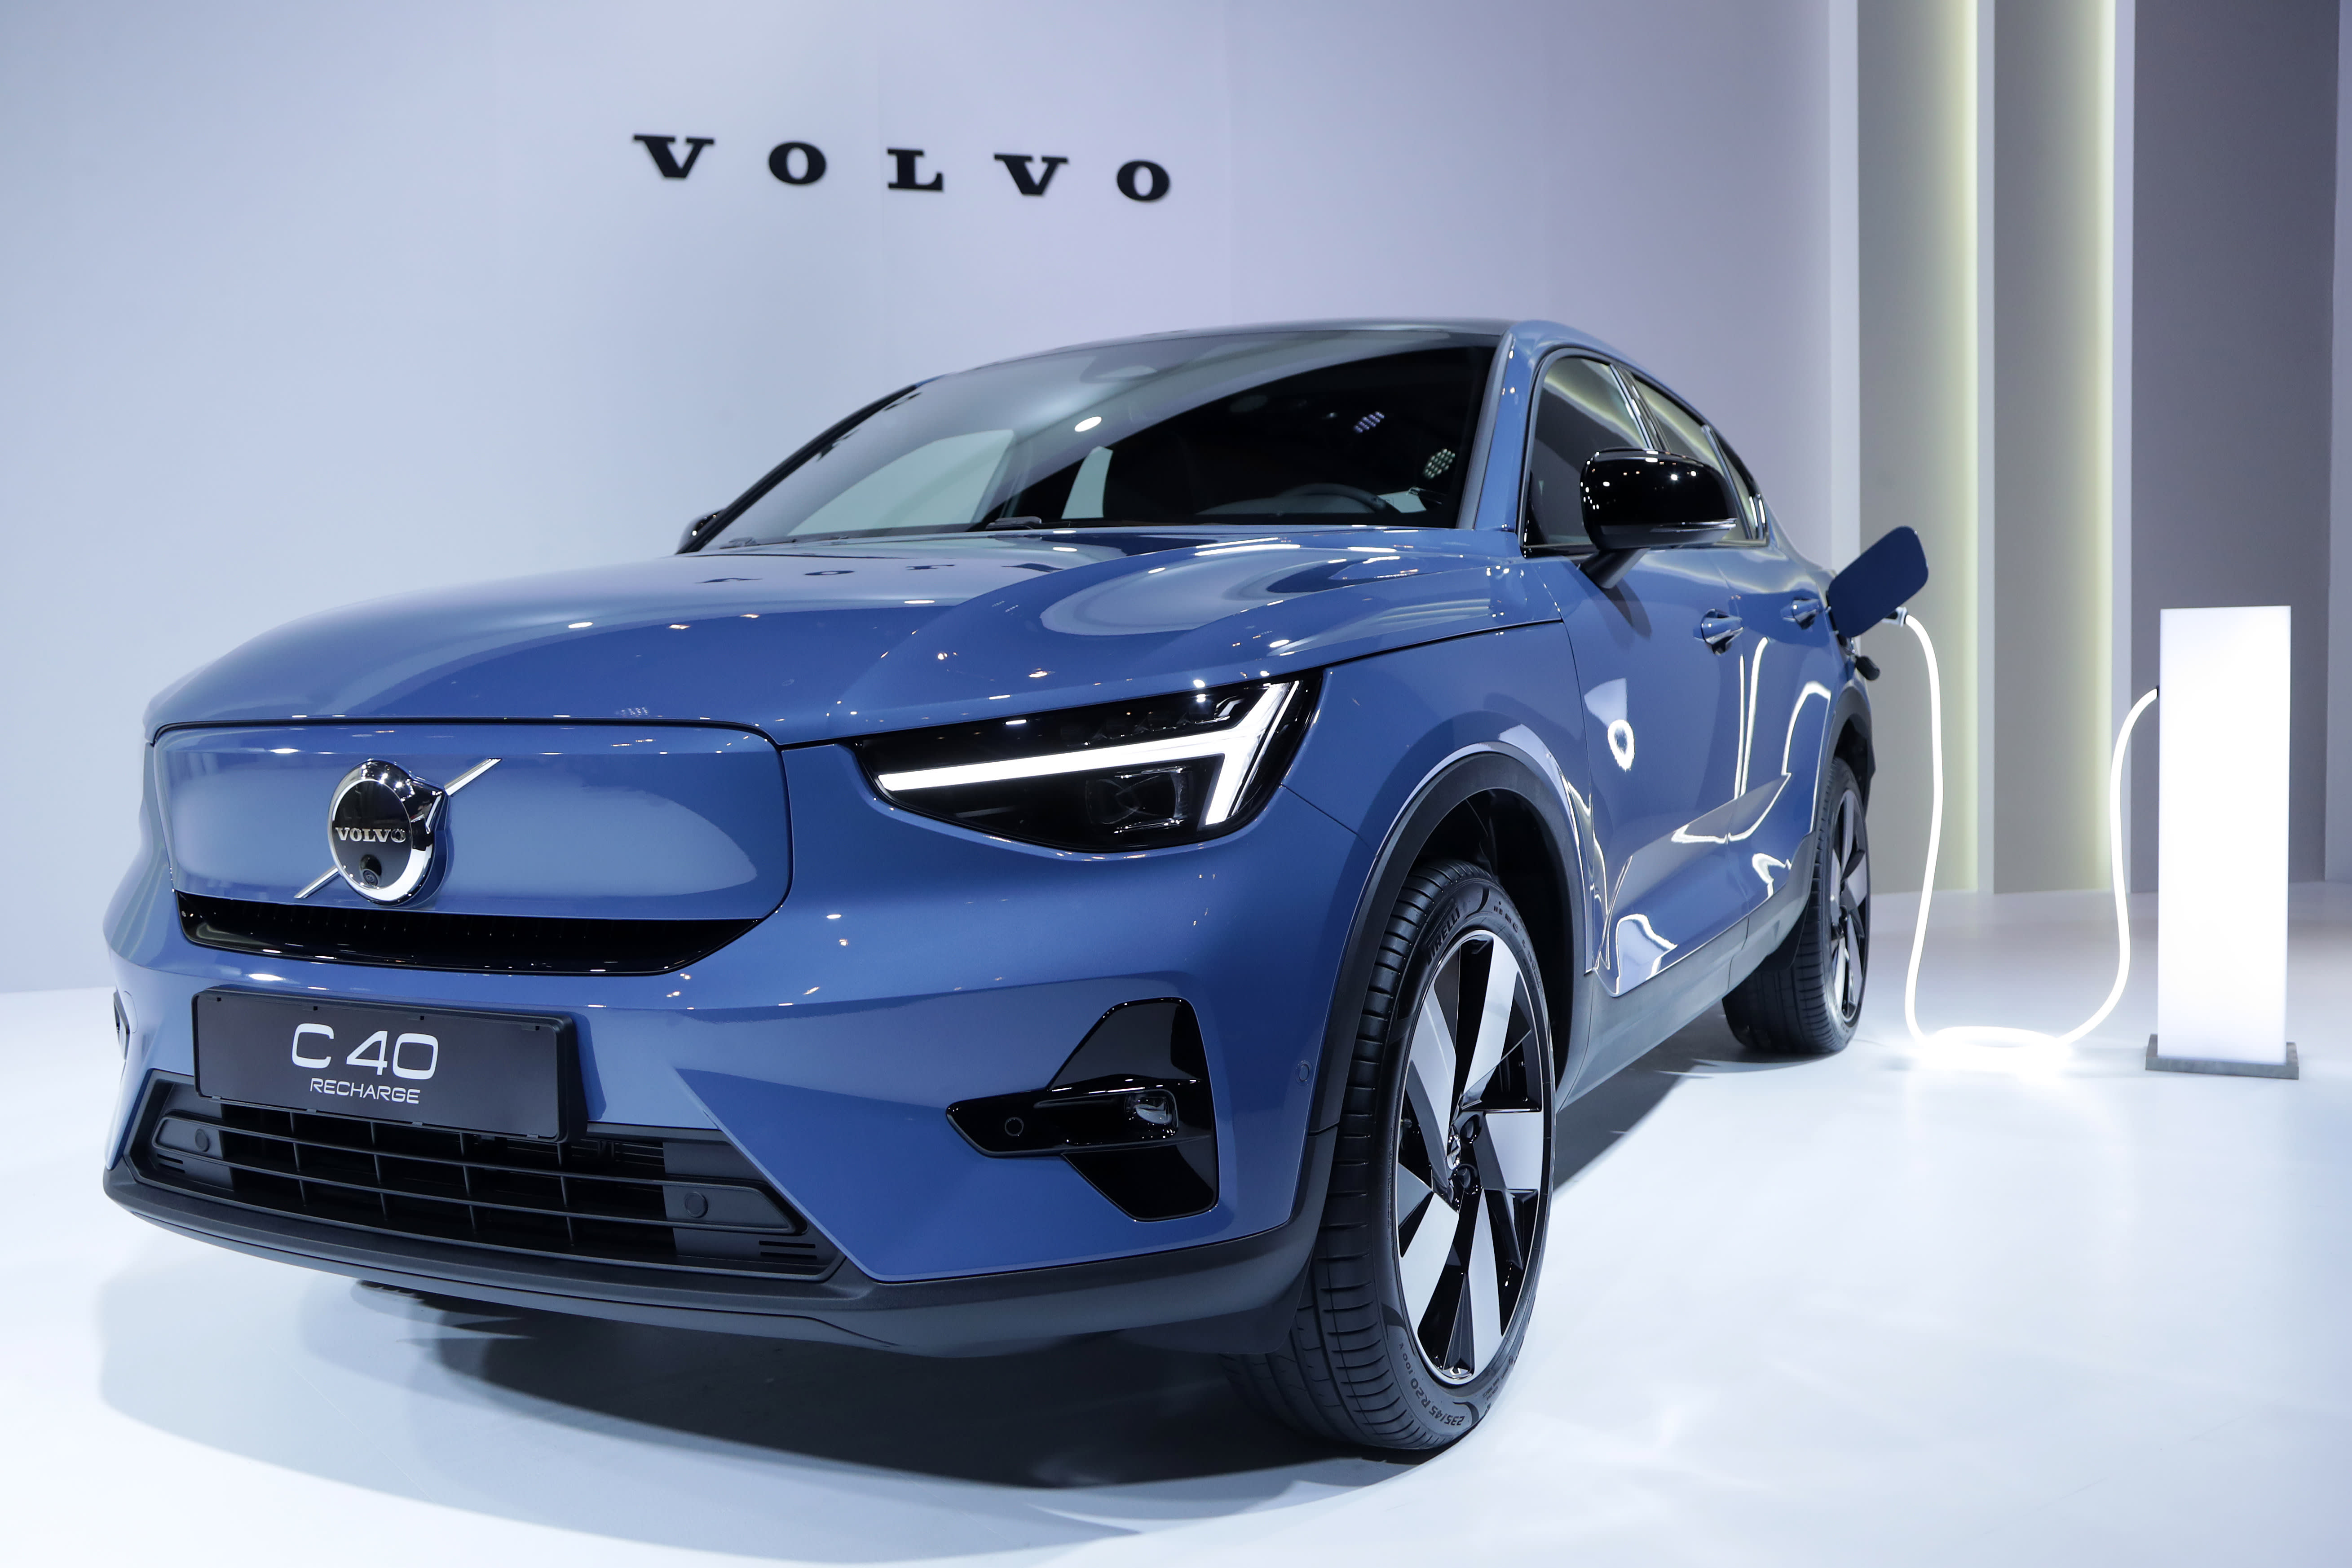 Akcje Volvo podskoczyły o 20% wraz ze wzrostem sprzedaży i planuje zaprzestać finansowania Polestar